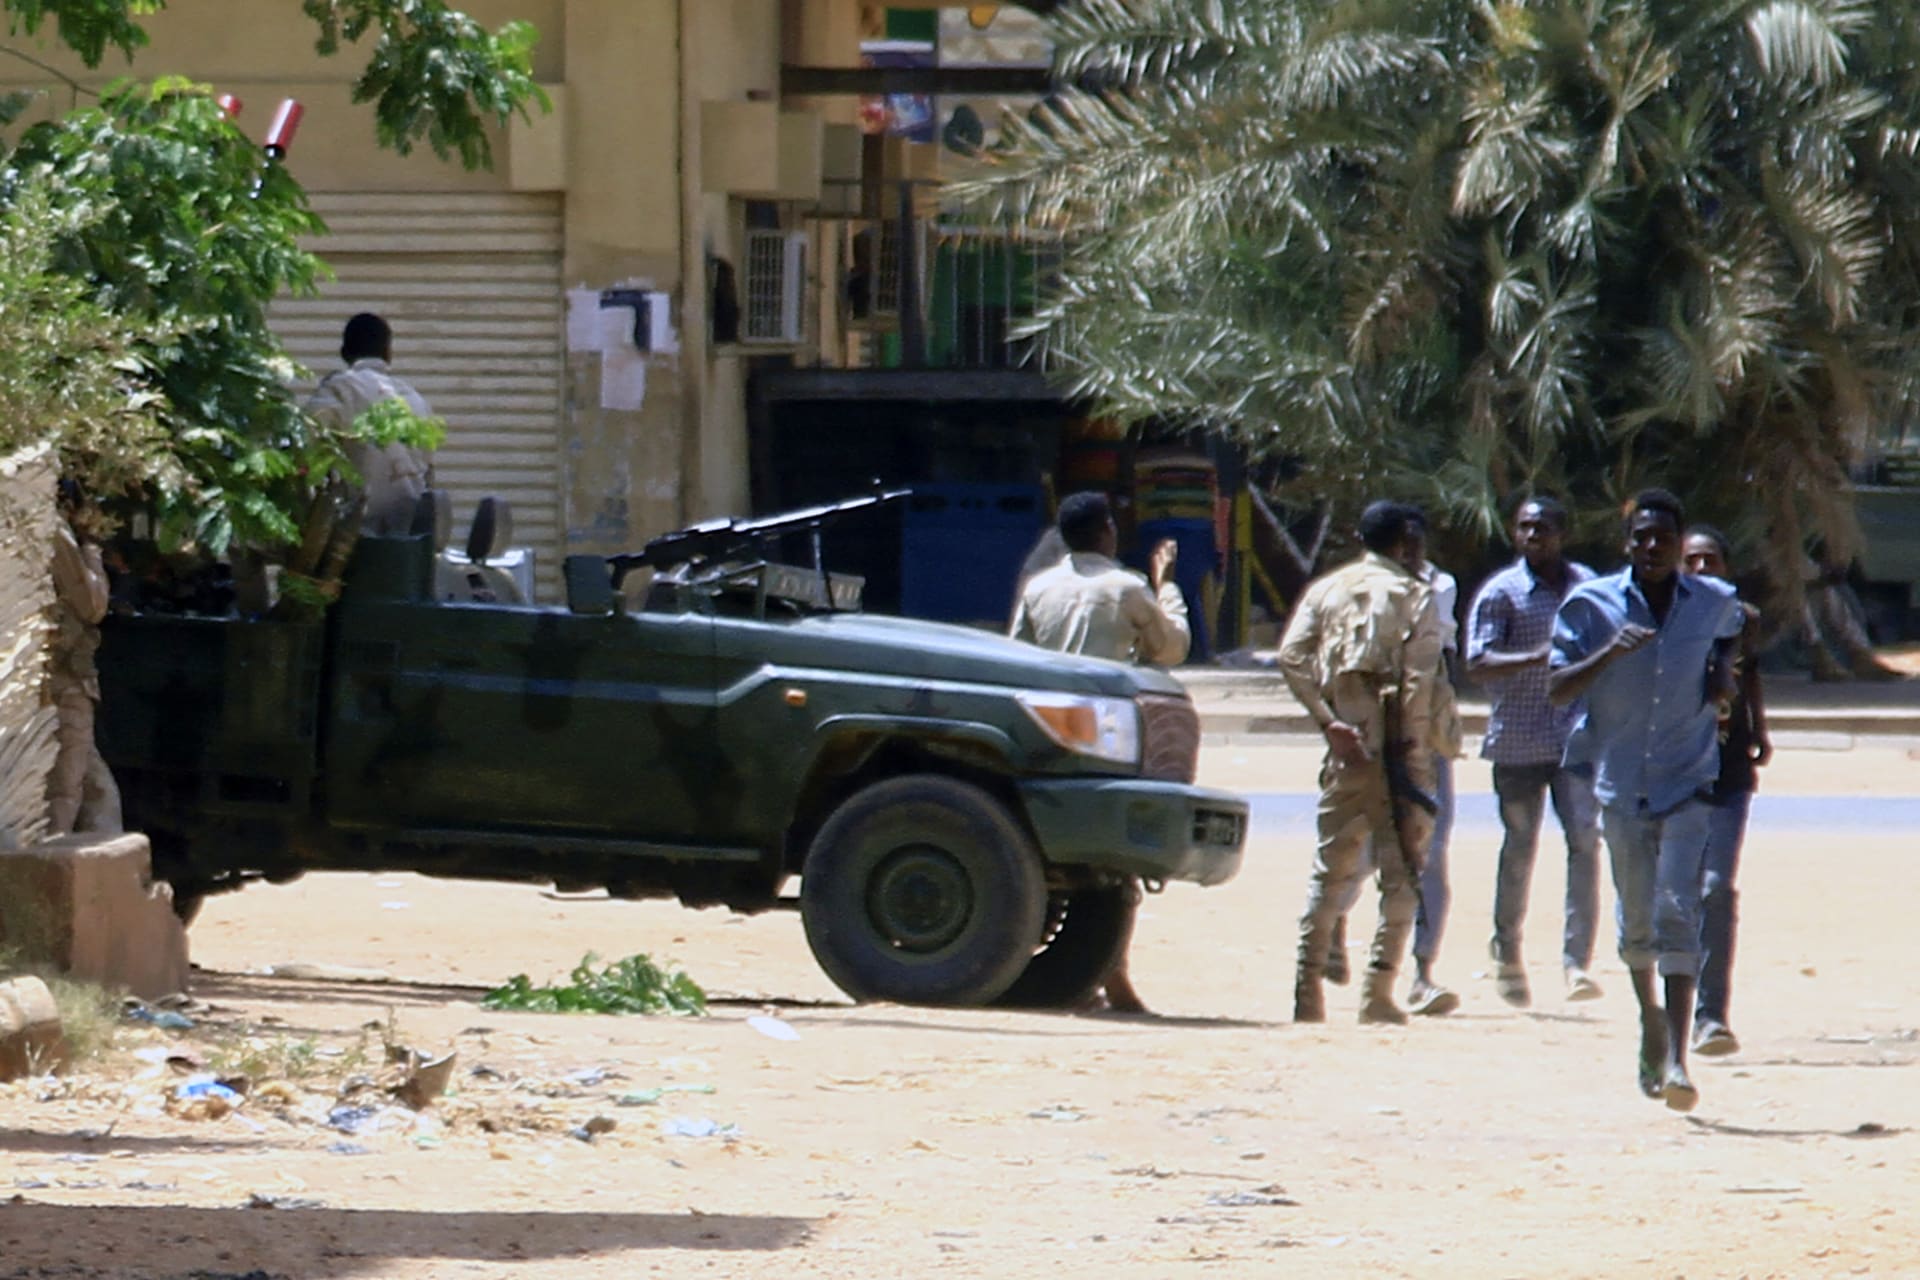 اتساع نطاق المعارك العنيفة بين الجيش السوداني وقوات الدعم السريع من الخرطوم للشرق إلى دارفور